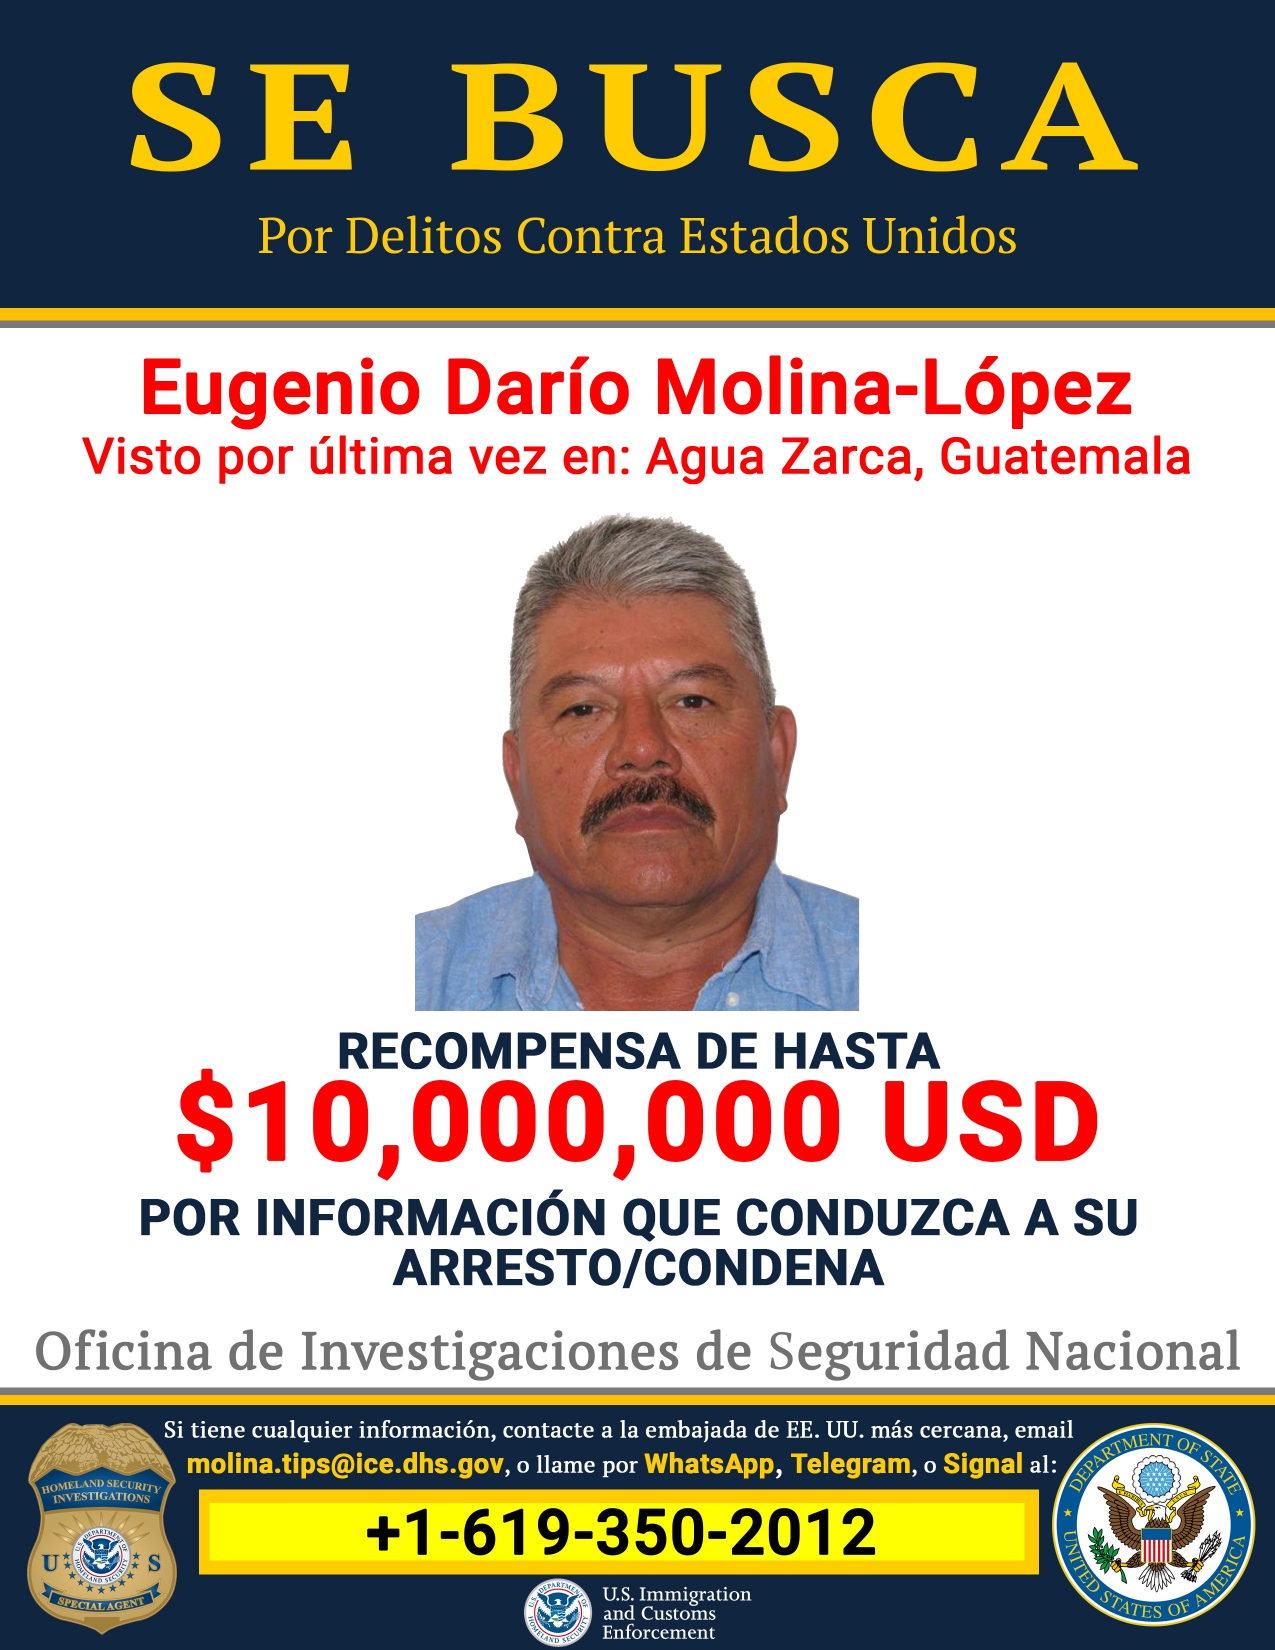 El líder del cártel guatemalteco es buscado con la misma recompensa ofrecida por el Mencho  (Foto: Department of State)